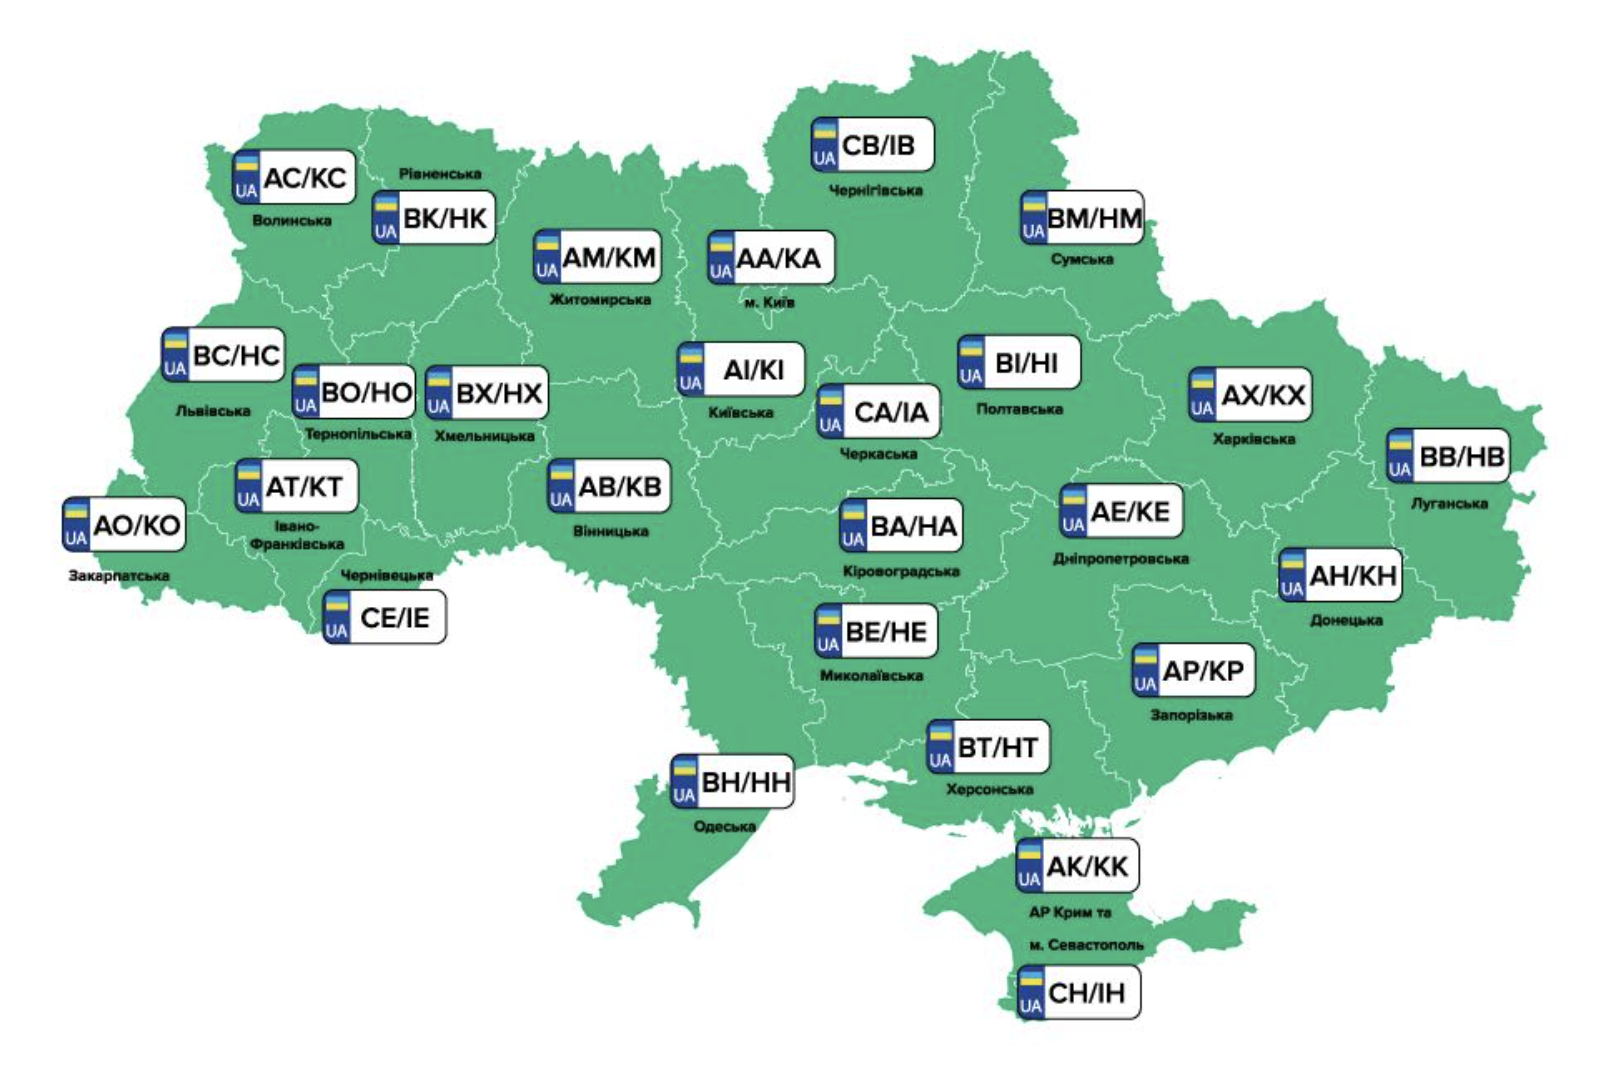 Вт номера украина. Регионы Украины автомобильные номера. Номерные знаки Украины по регионам. Автономера Украины по регионам. Регионы Украины по номерам.